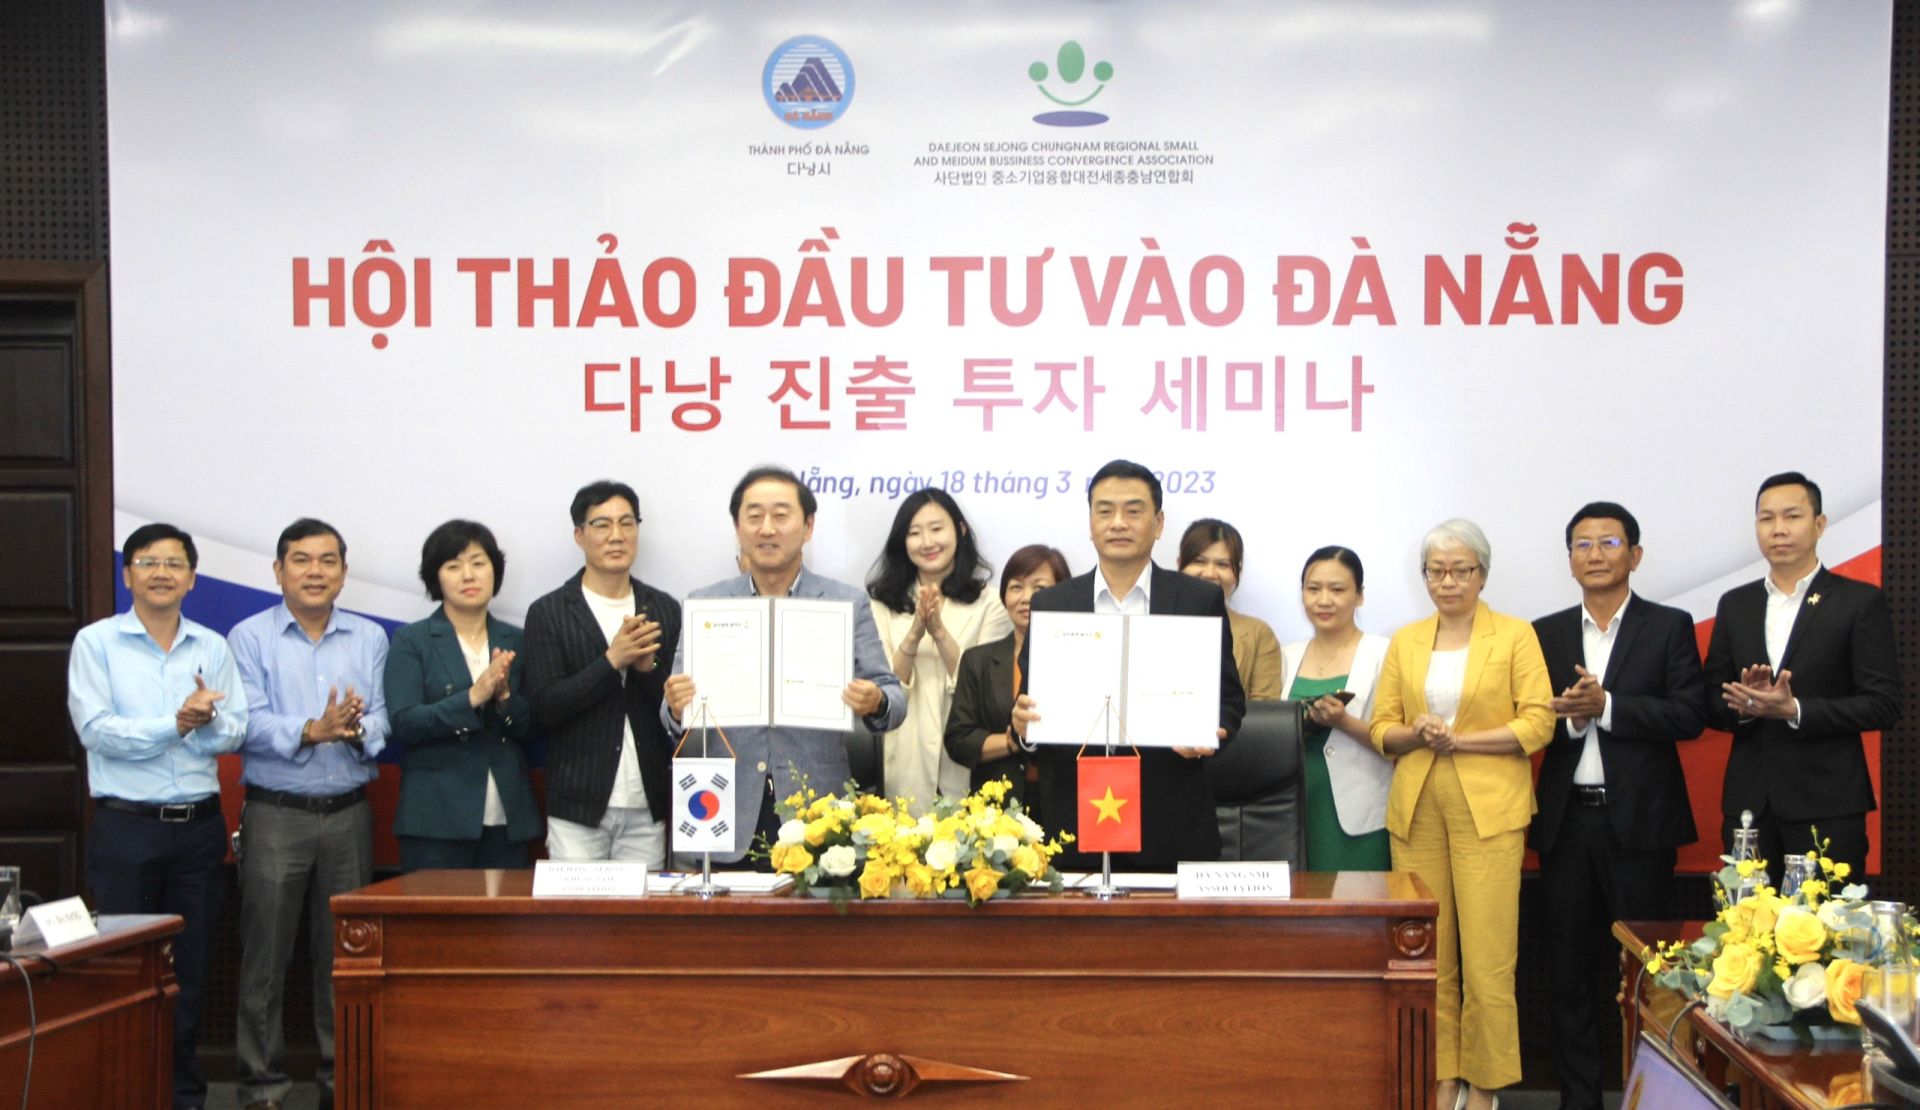 Hiệp hội Doanh nghiệp nhỏ và vừa thành phố Đà Nẵng ký kết Biên bản ghi nhớ hợp tác với Hiệp hội Doanh nghiệp nhỏ và vừa khu vực Daejeon - Sejong - Chungnam